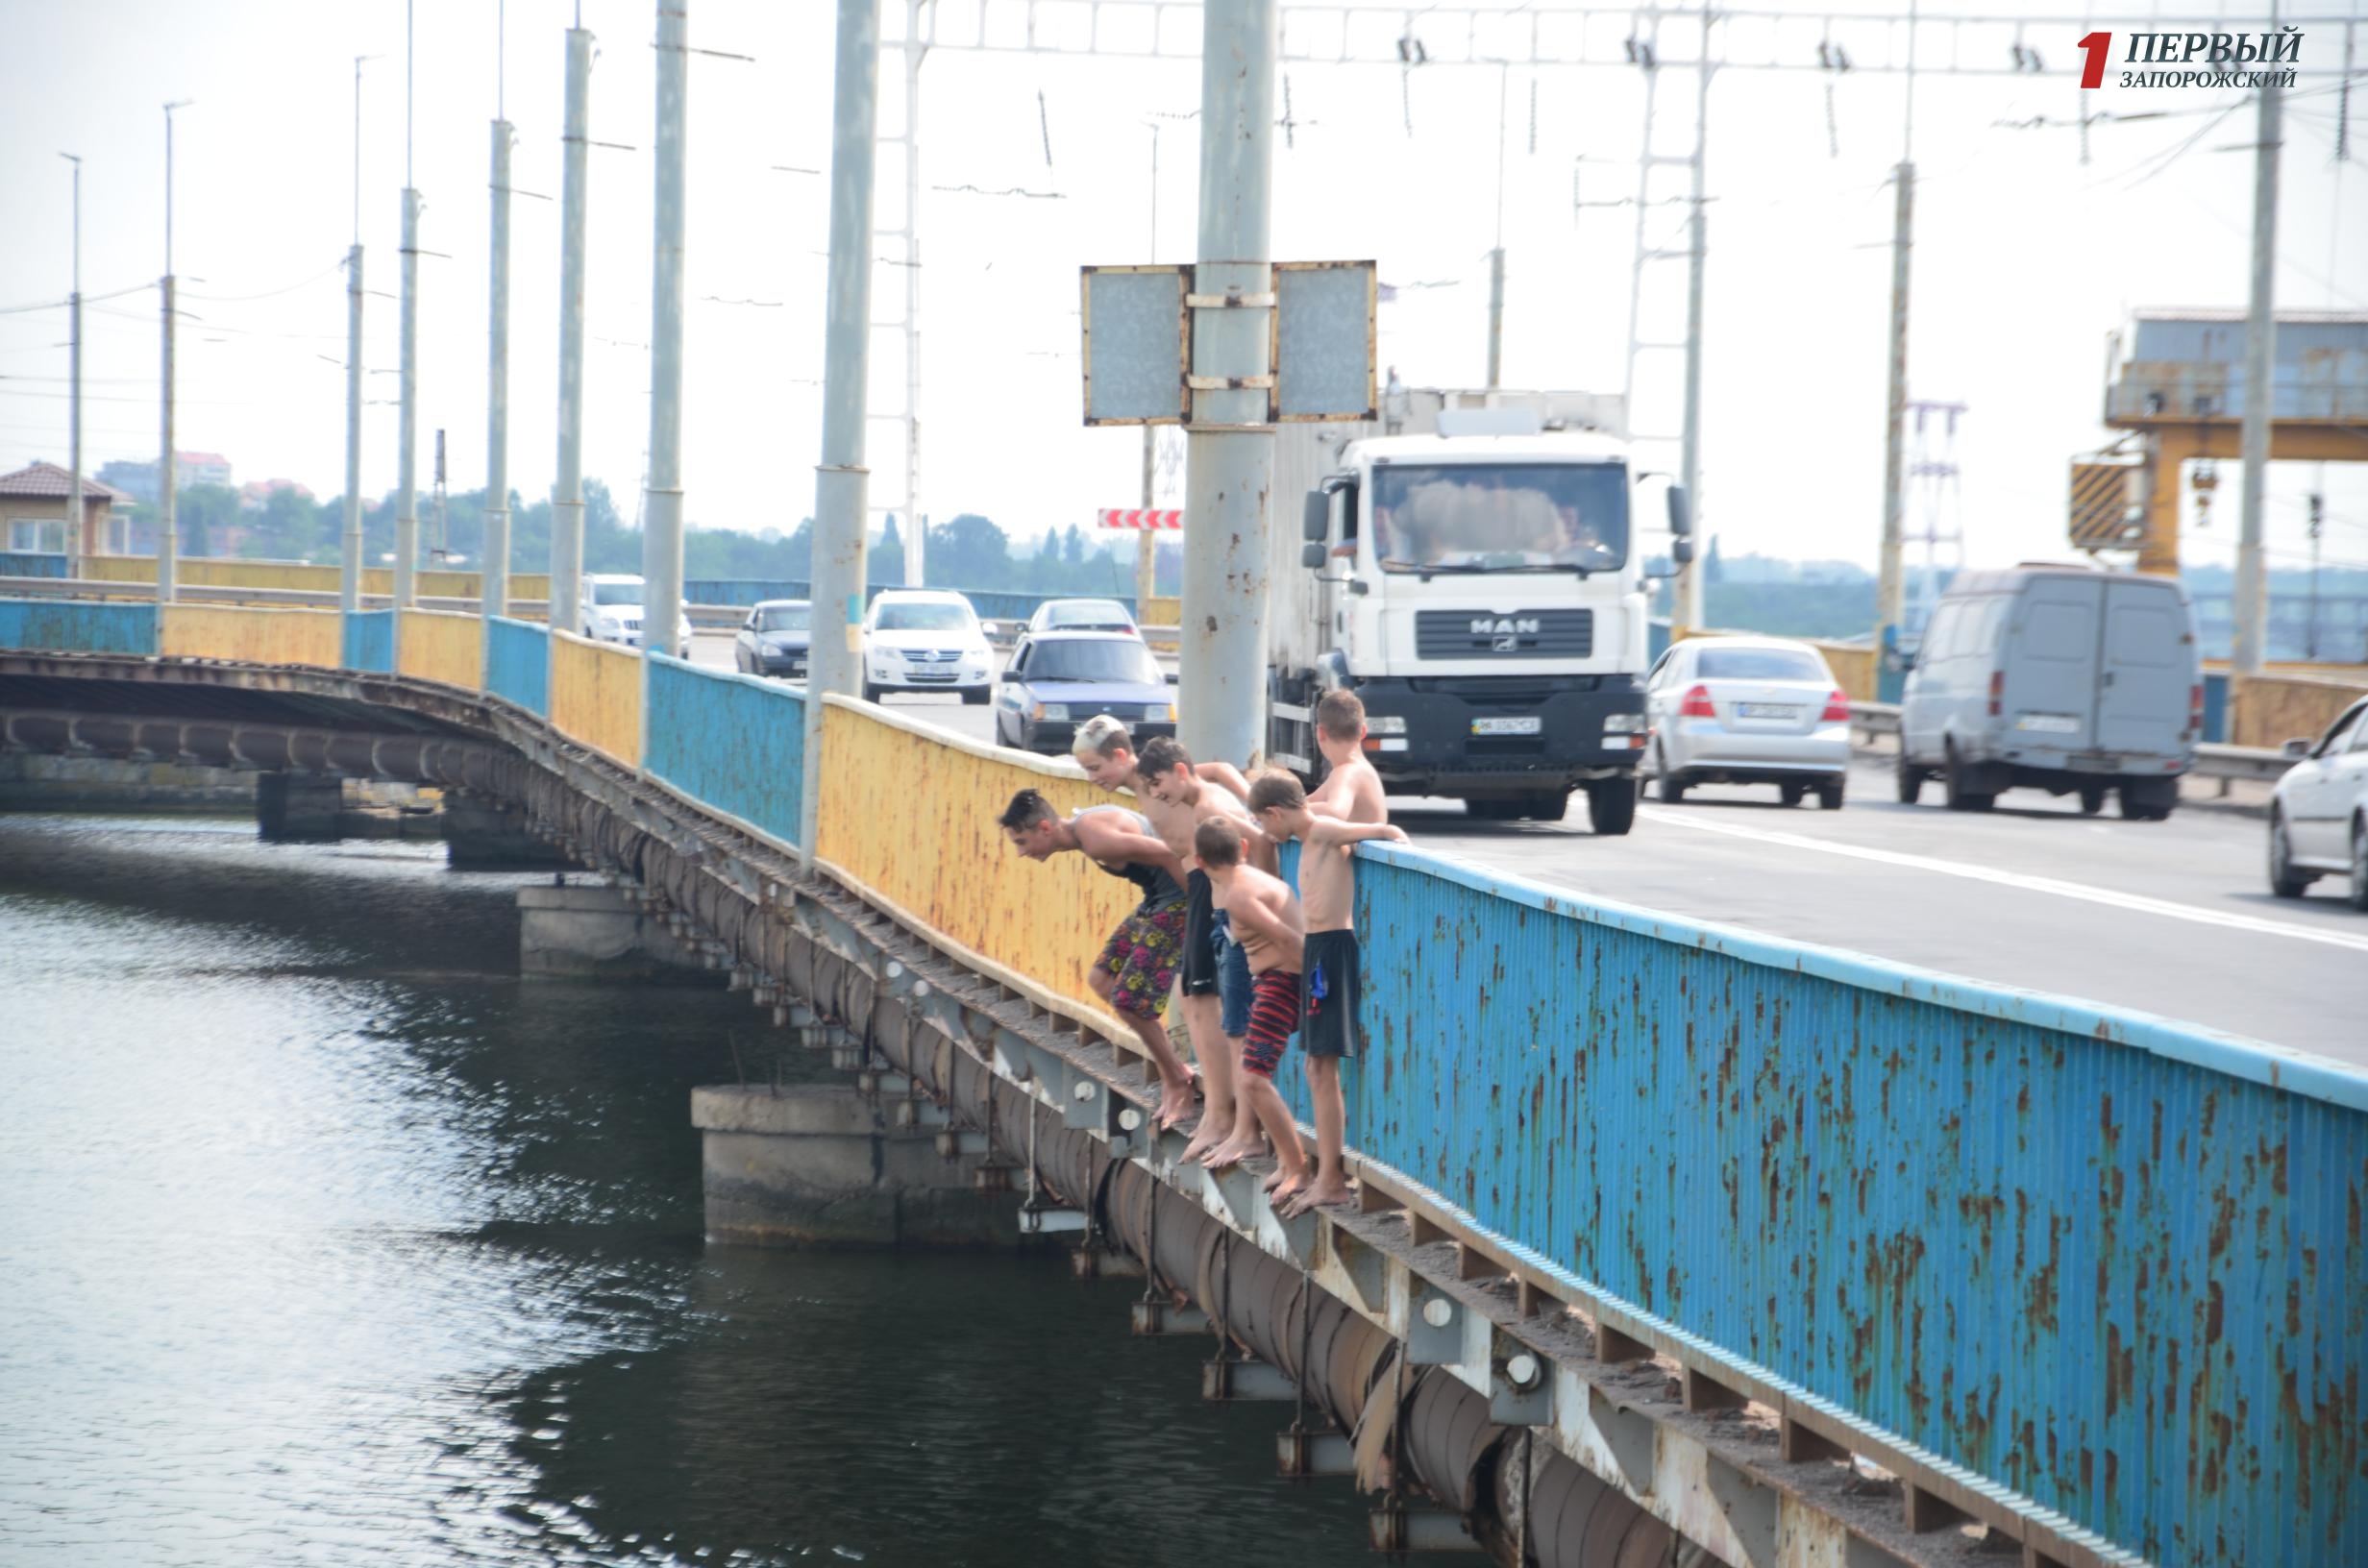 Опасное развлечение: в Запорожье подростки прыгают с моста ДнепроГЭСа - ФОТО